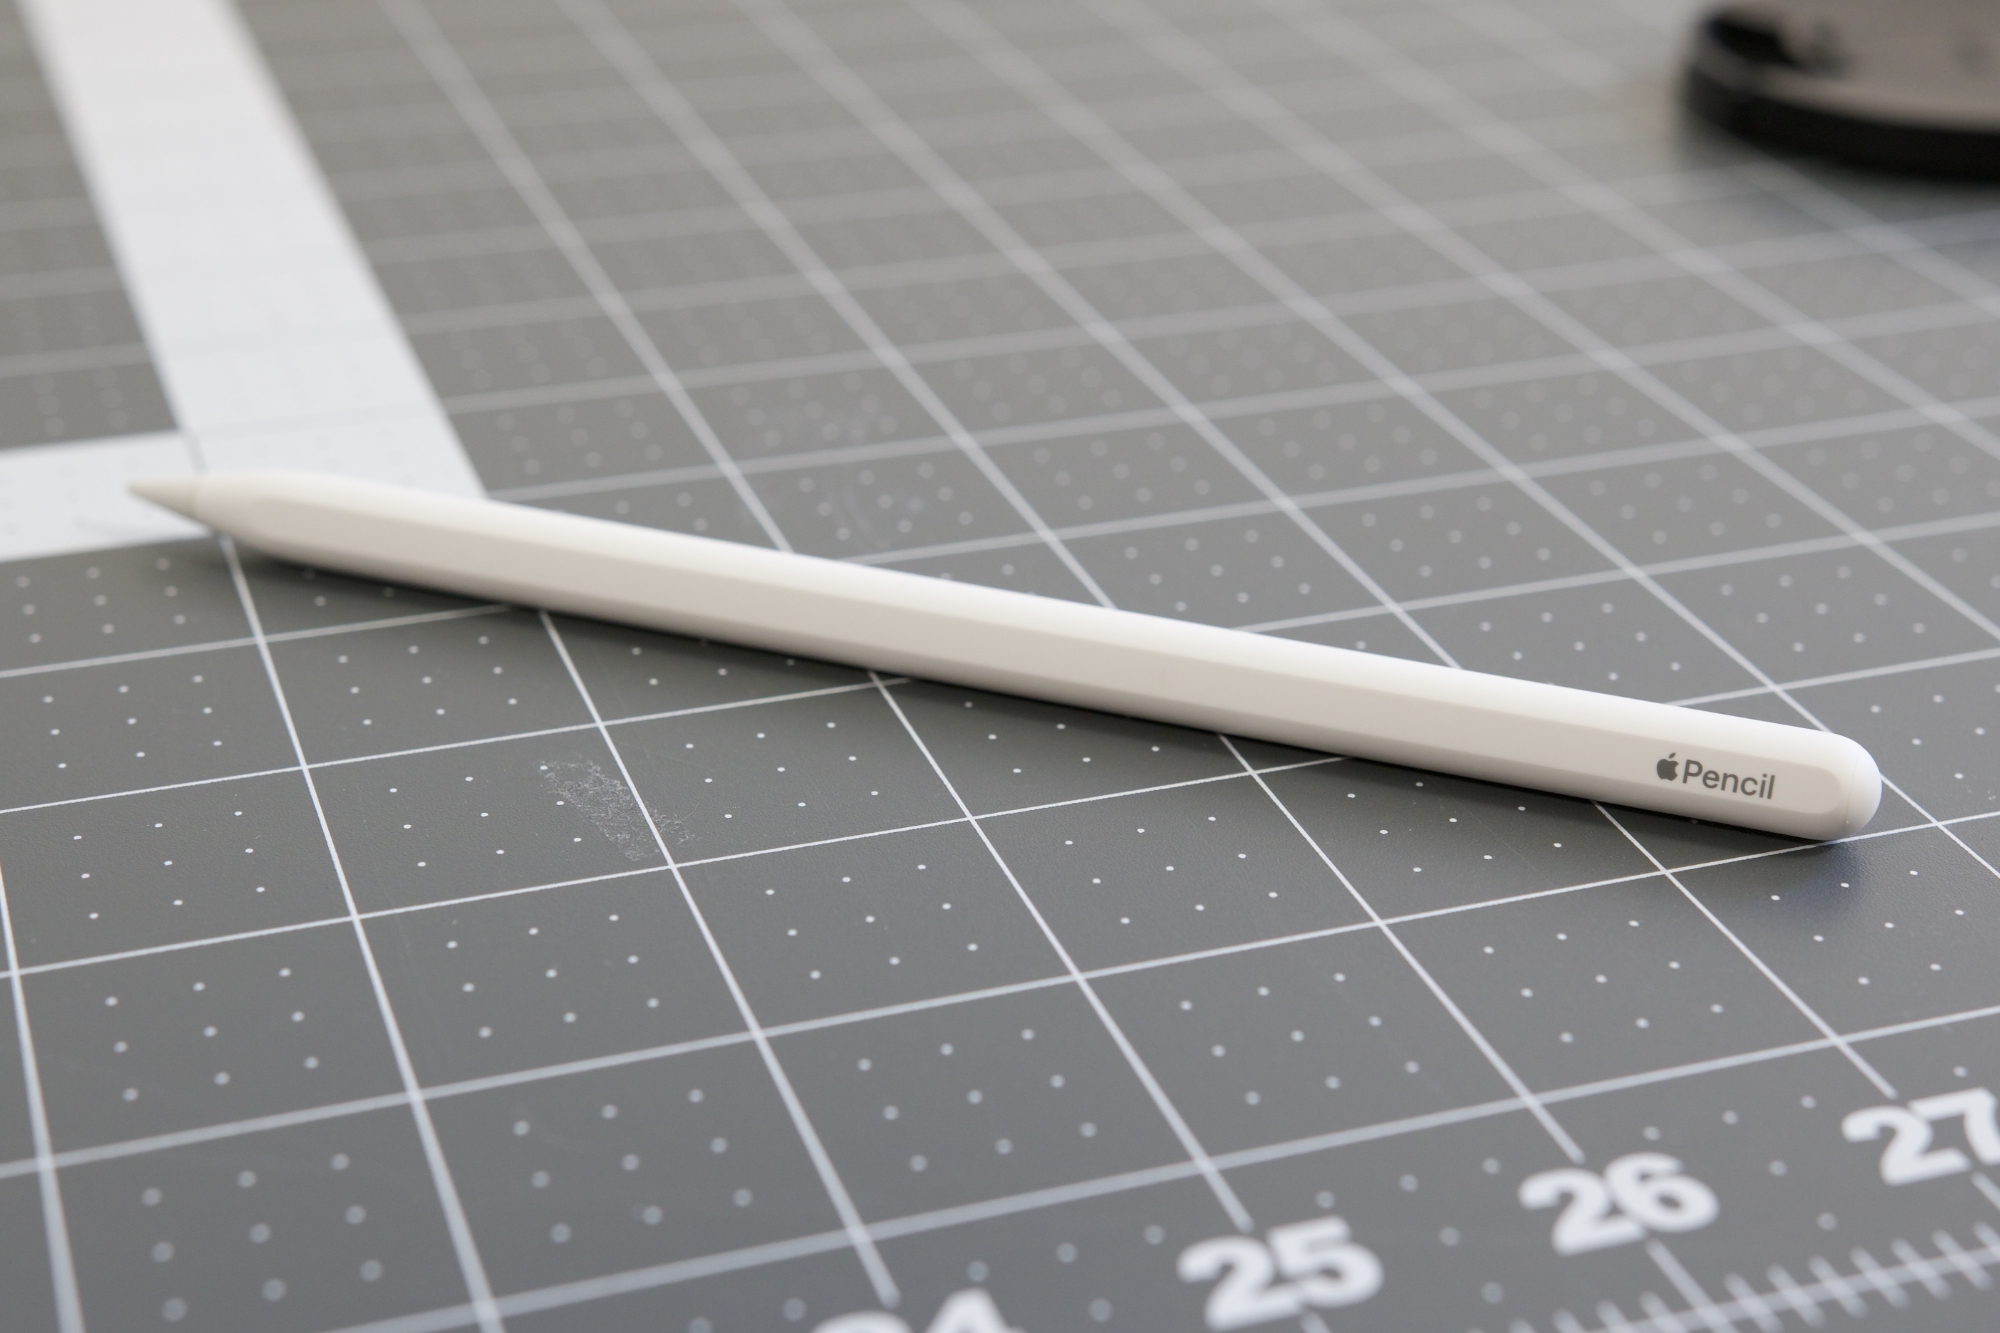 O Apple Pencil de 2ª geração sobre uma mesa.